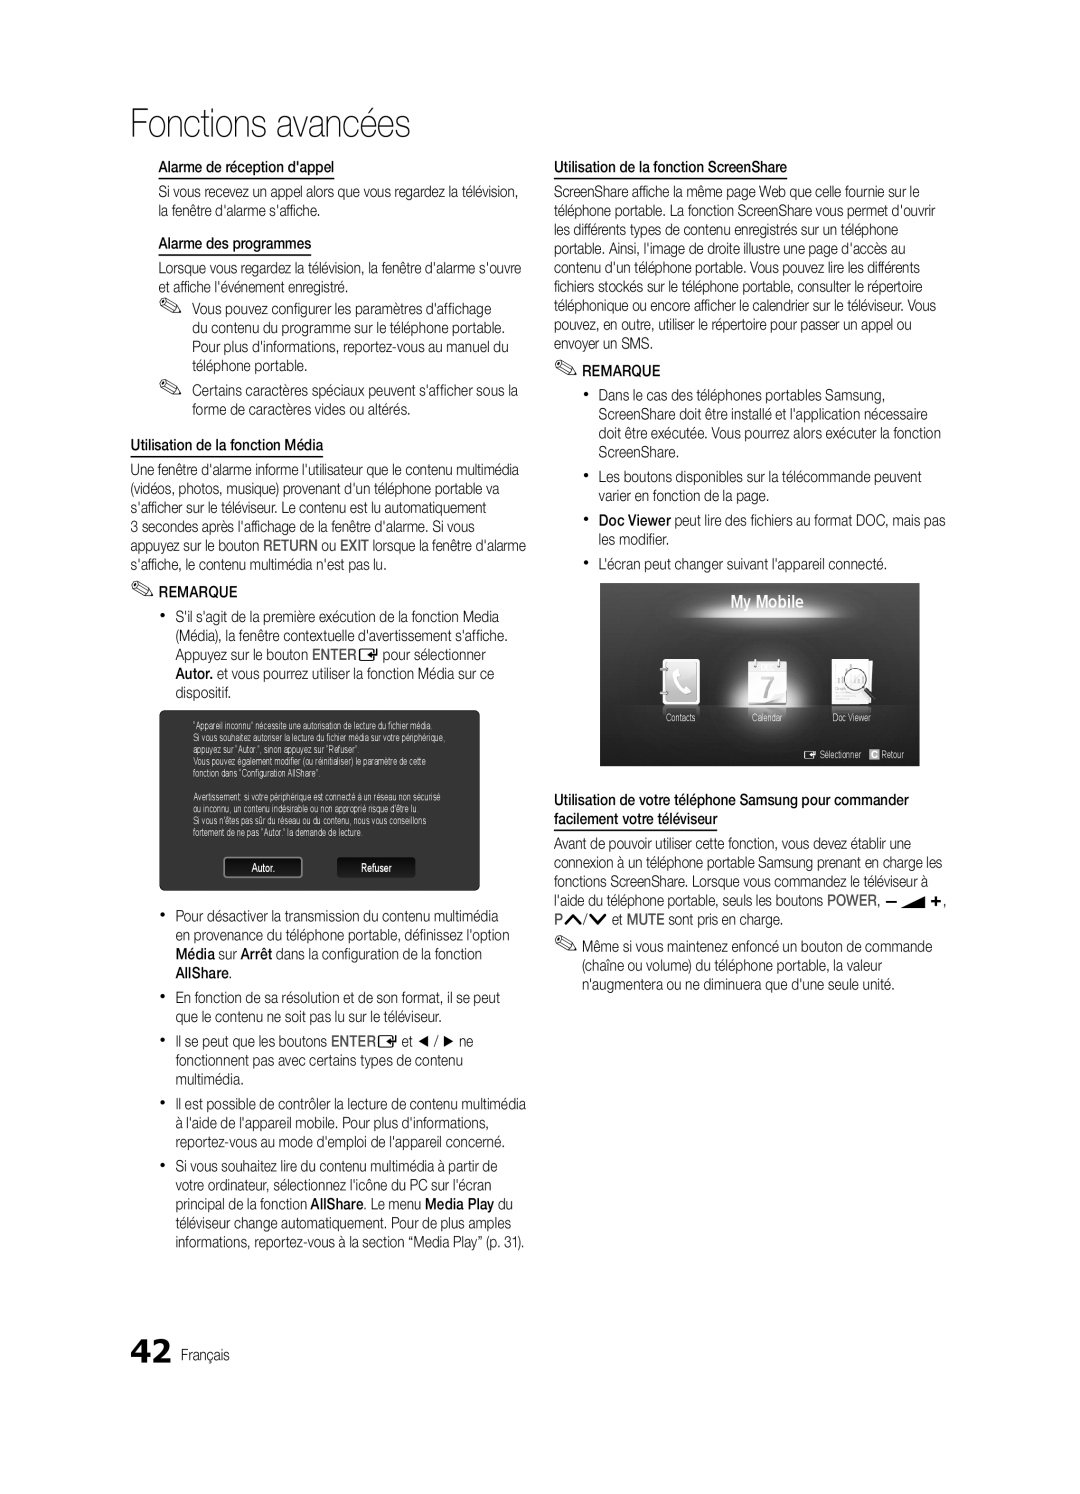 Samsung UE32C5700QSXZG Fonctions avancées, My Mobile, xx Il est possible de contrôler la lecture de contenu multimédia 